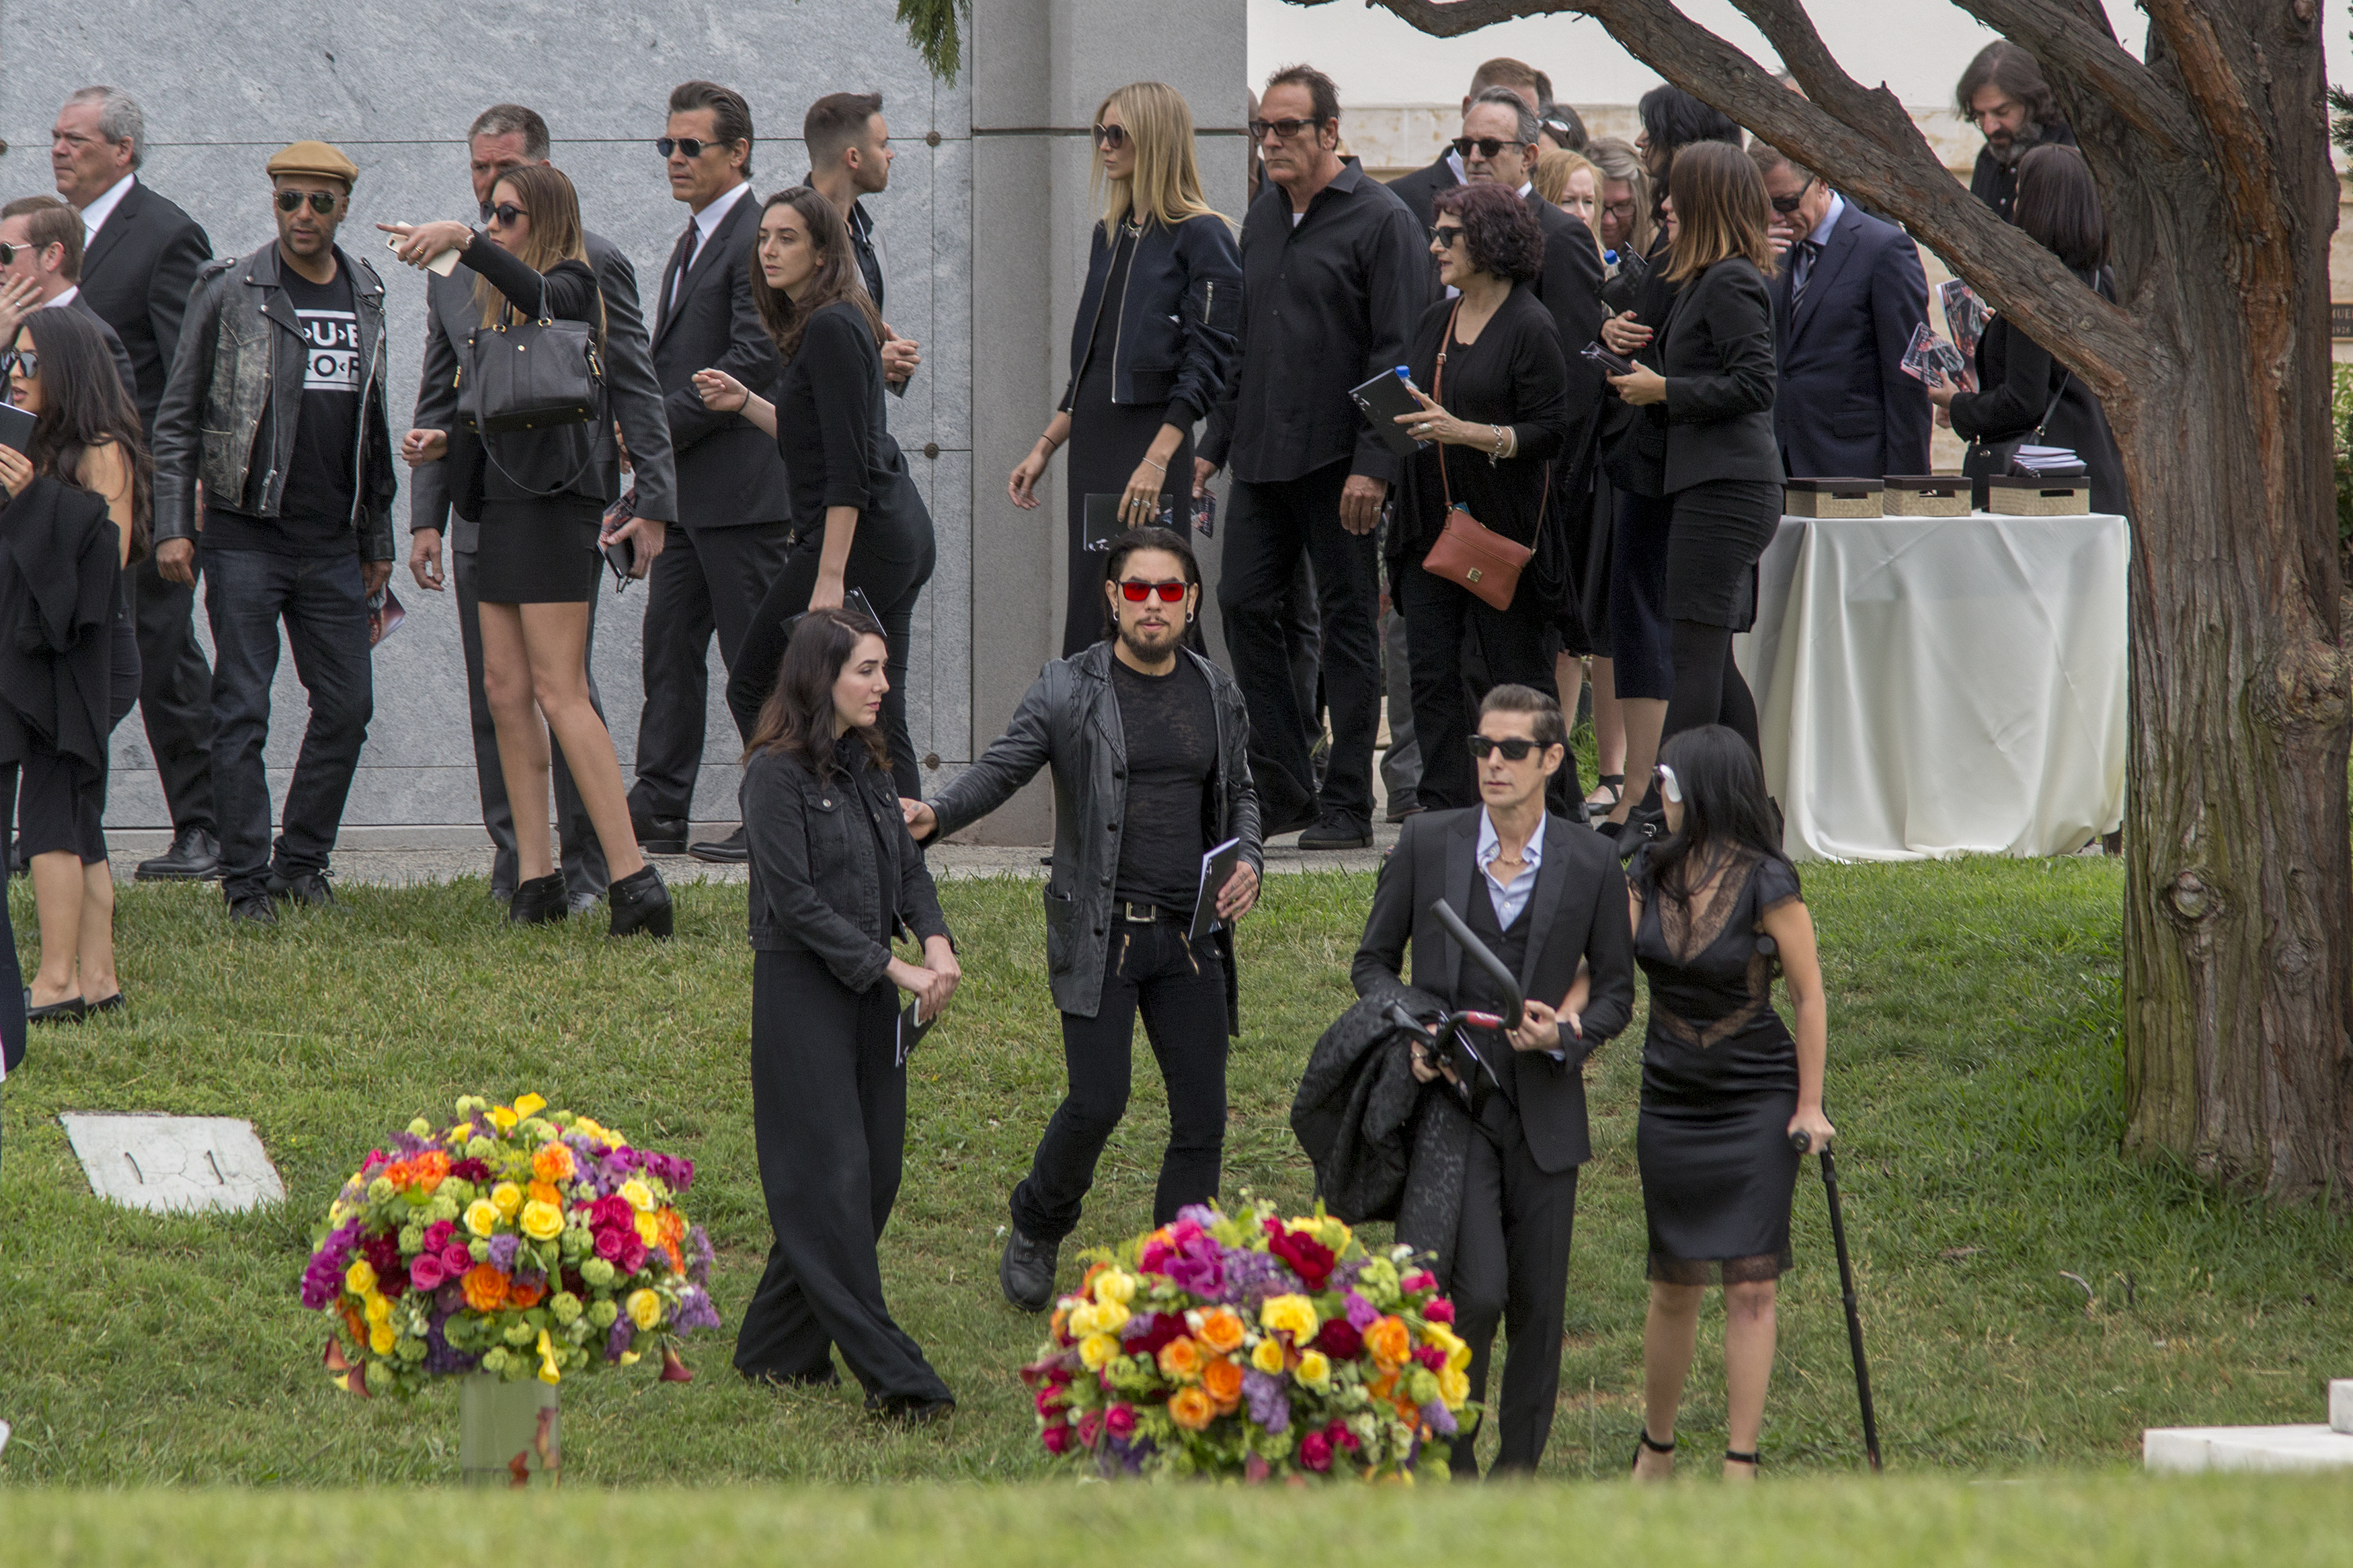 Приметы на похоронах - что можно и чего нельзя делать на кладбище, как себя вести